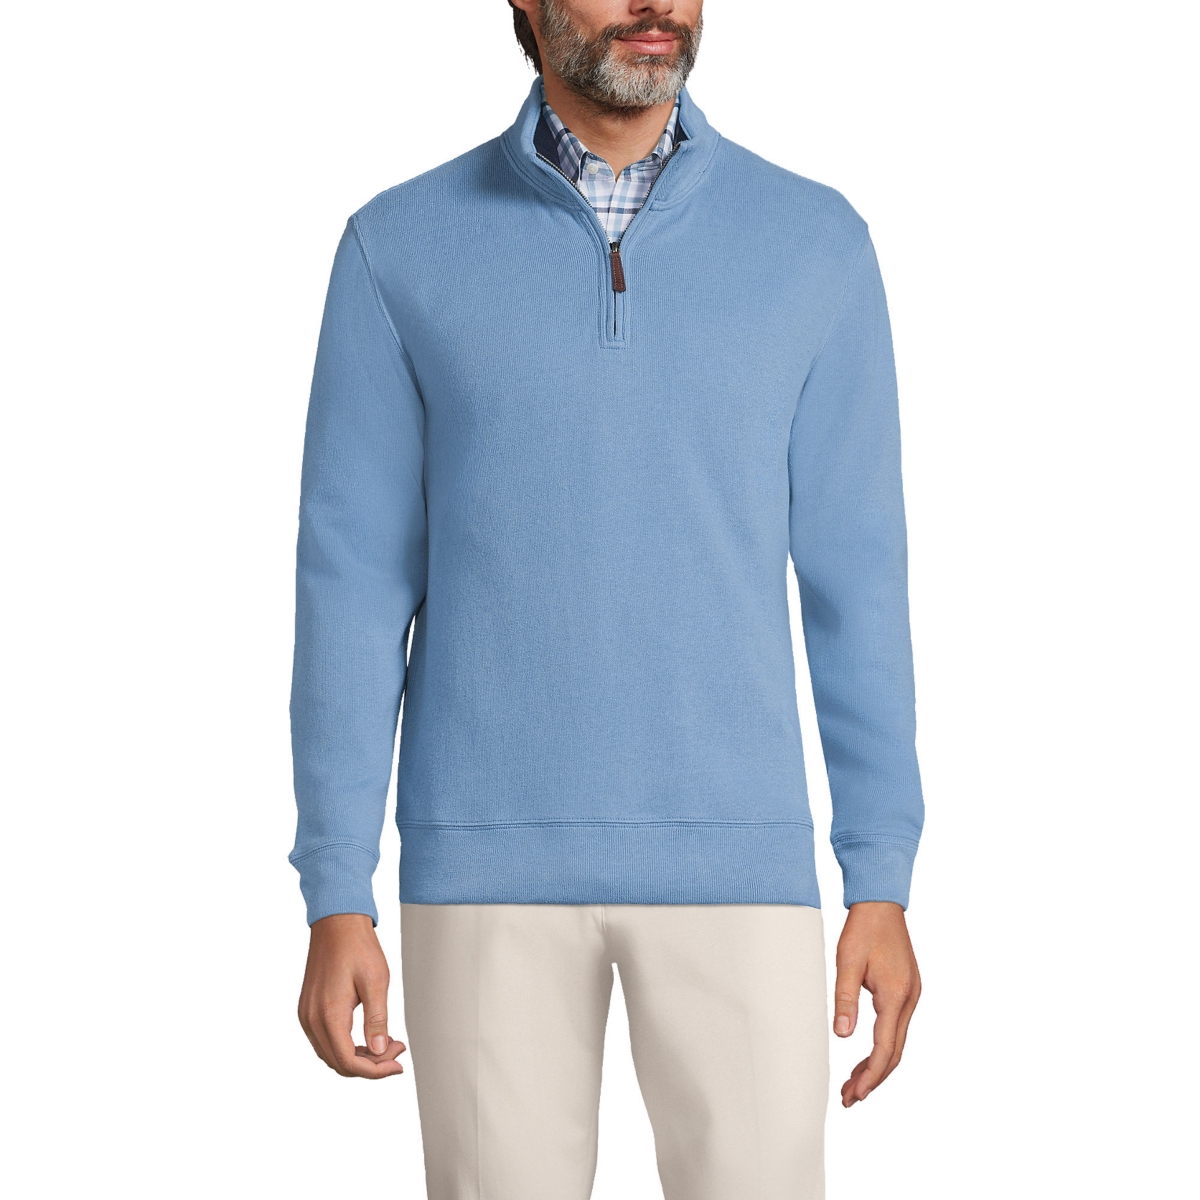 Big & Tall Bedford Rib Quarter Zip Sweater - Muted blue